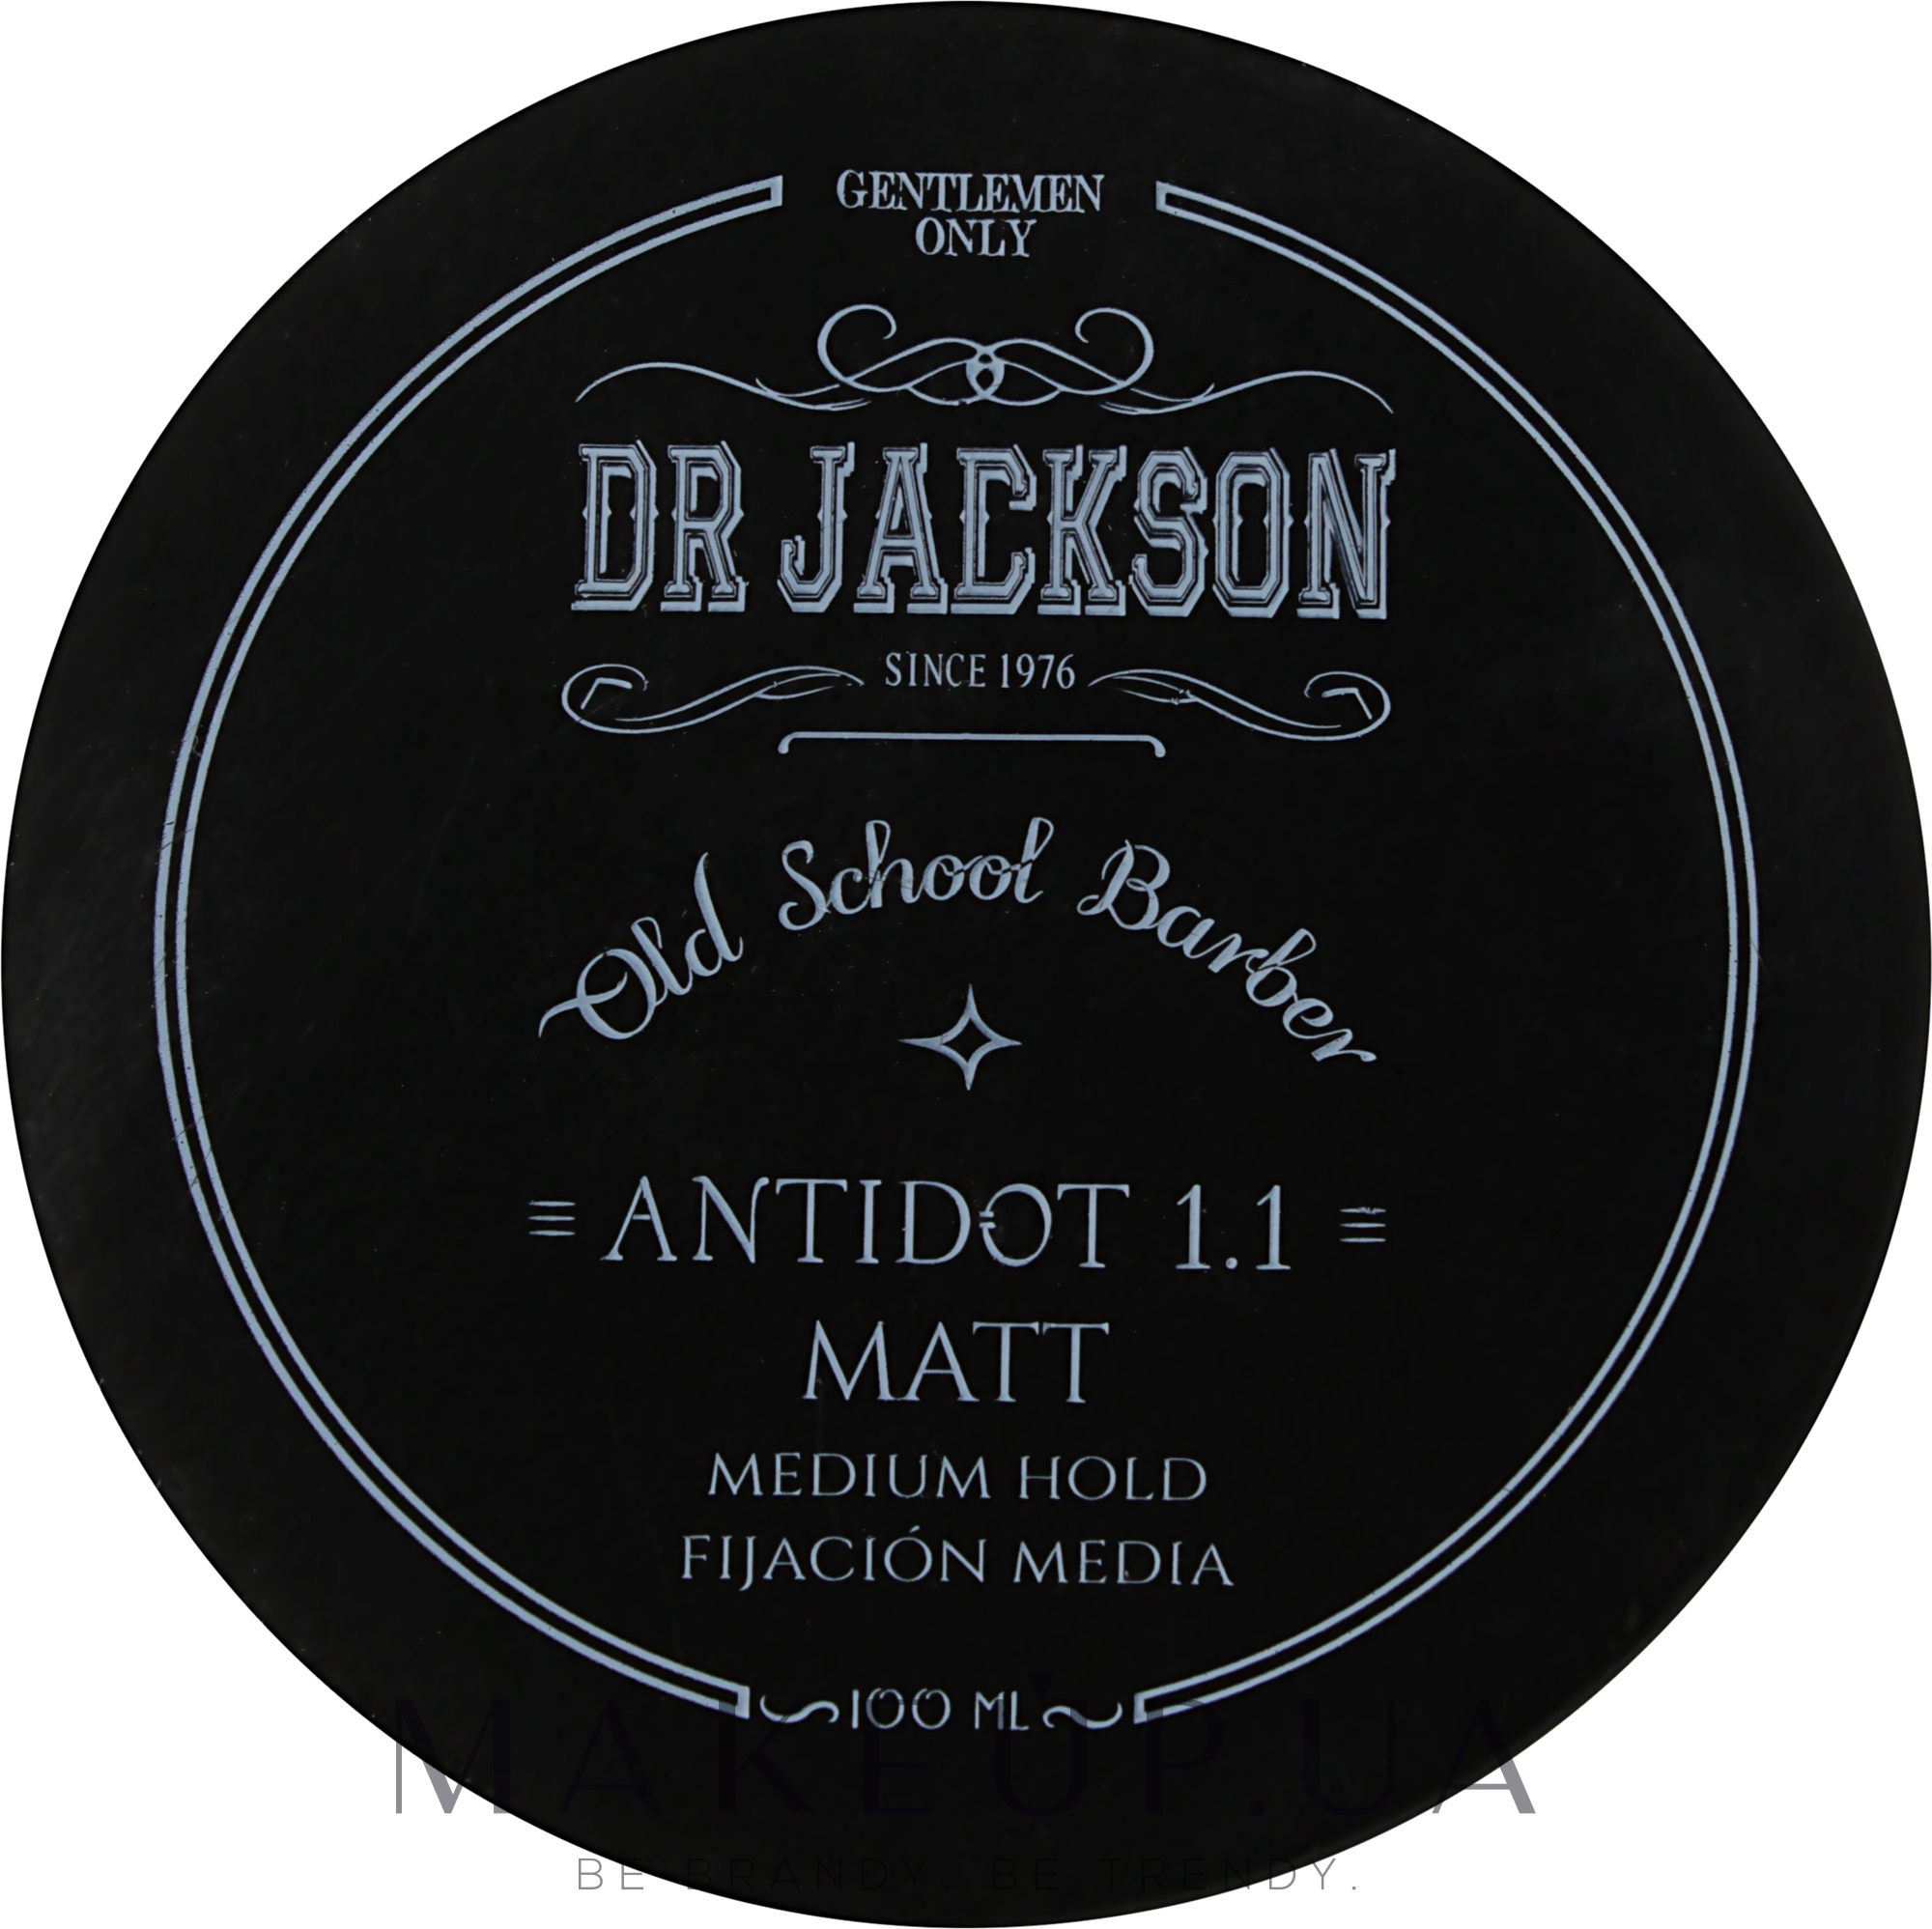 Матовый воск для укладки волос, средняя фиксация - Dr Jackson Gentlemen Only Old School Barber Antidot 1.1 Matt Medium Hold — фото 100ml